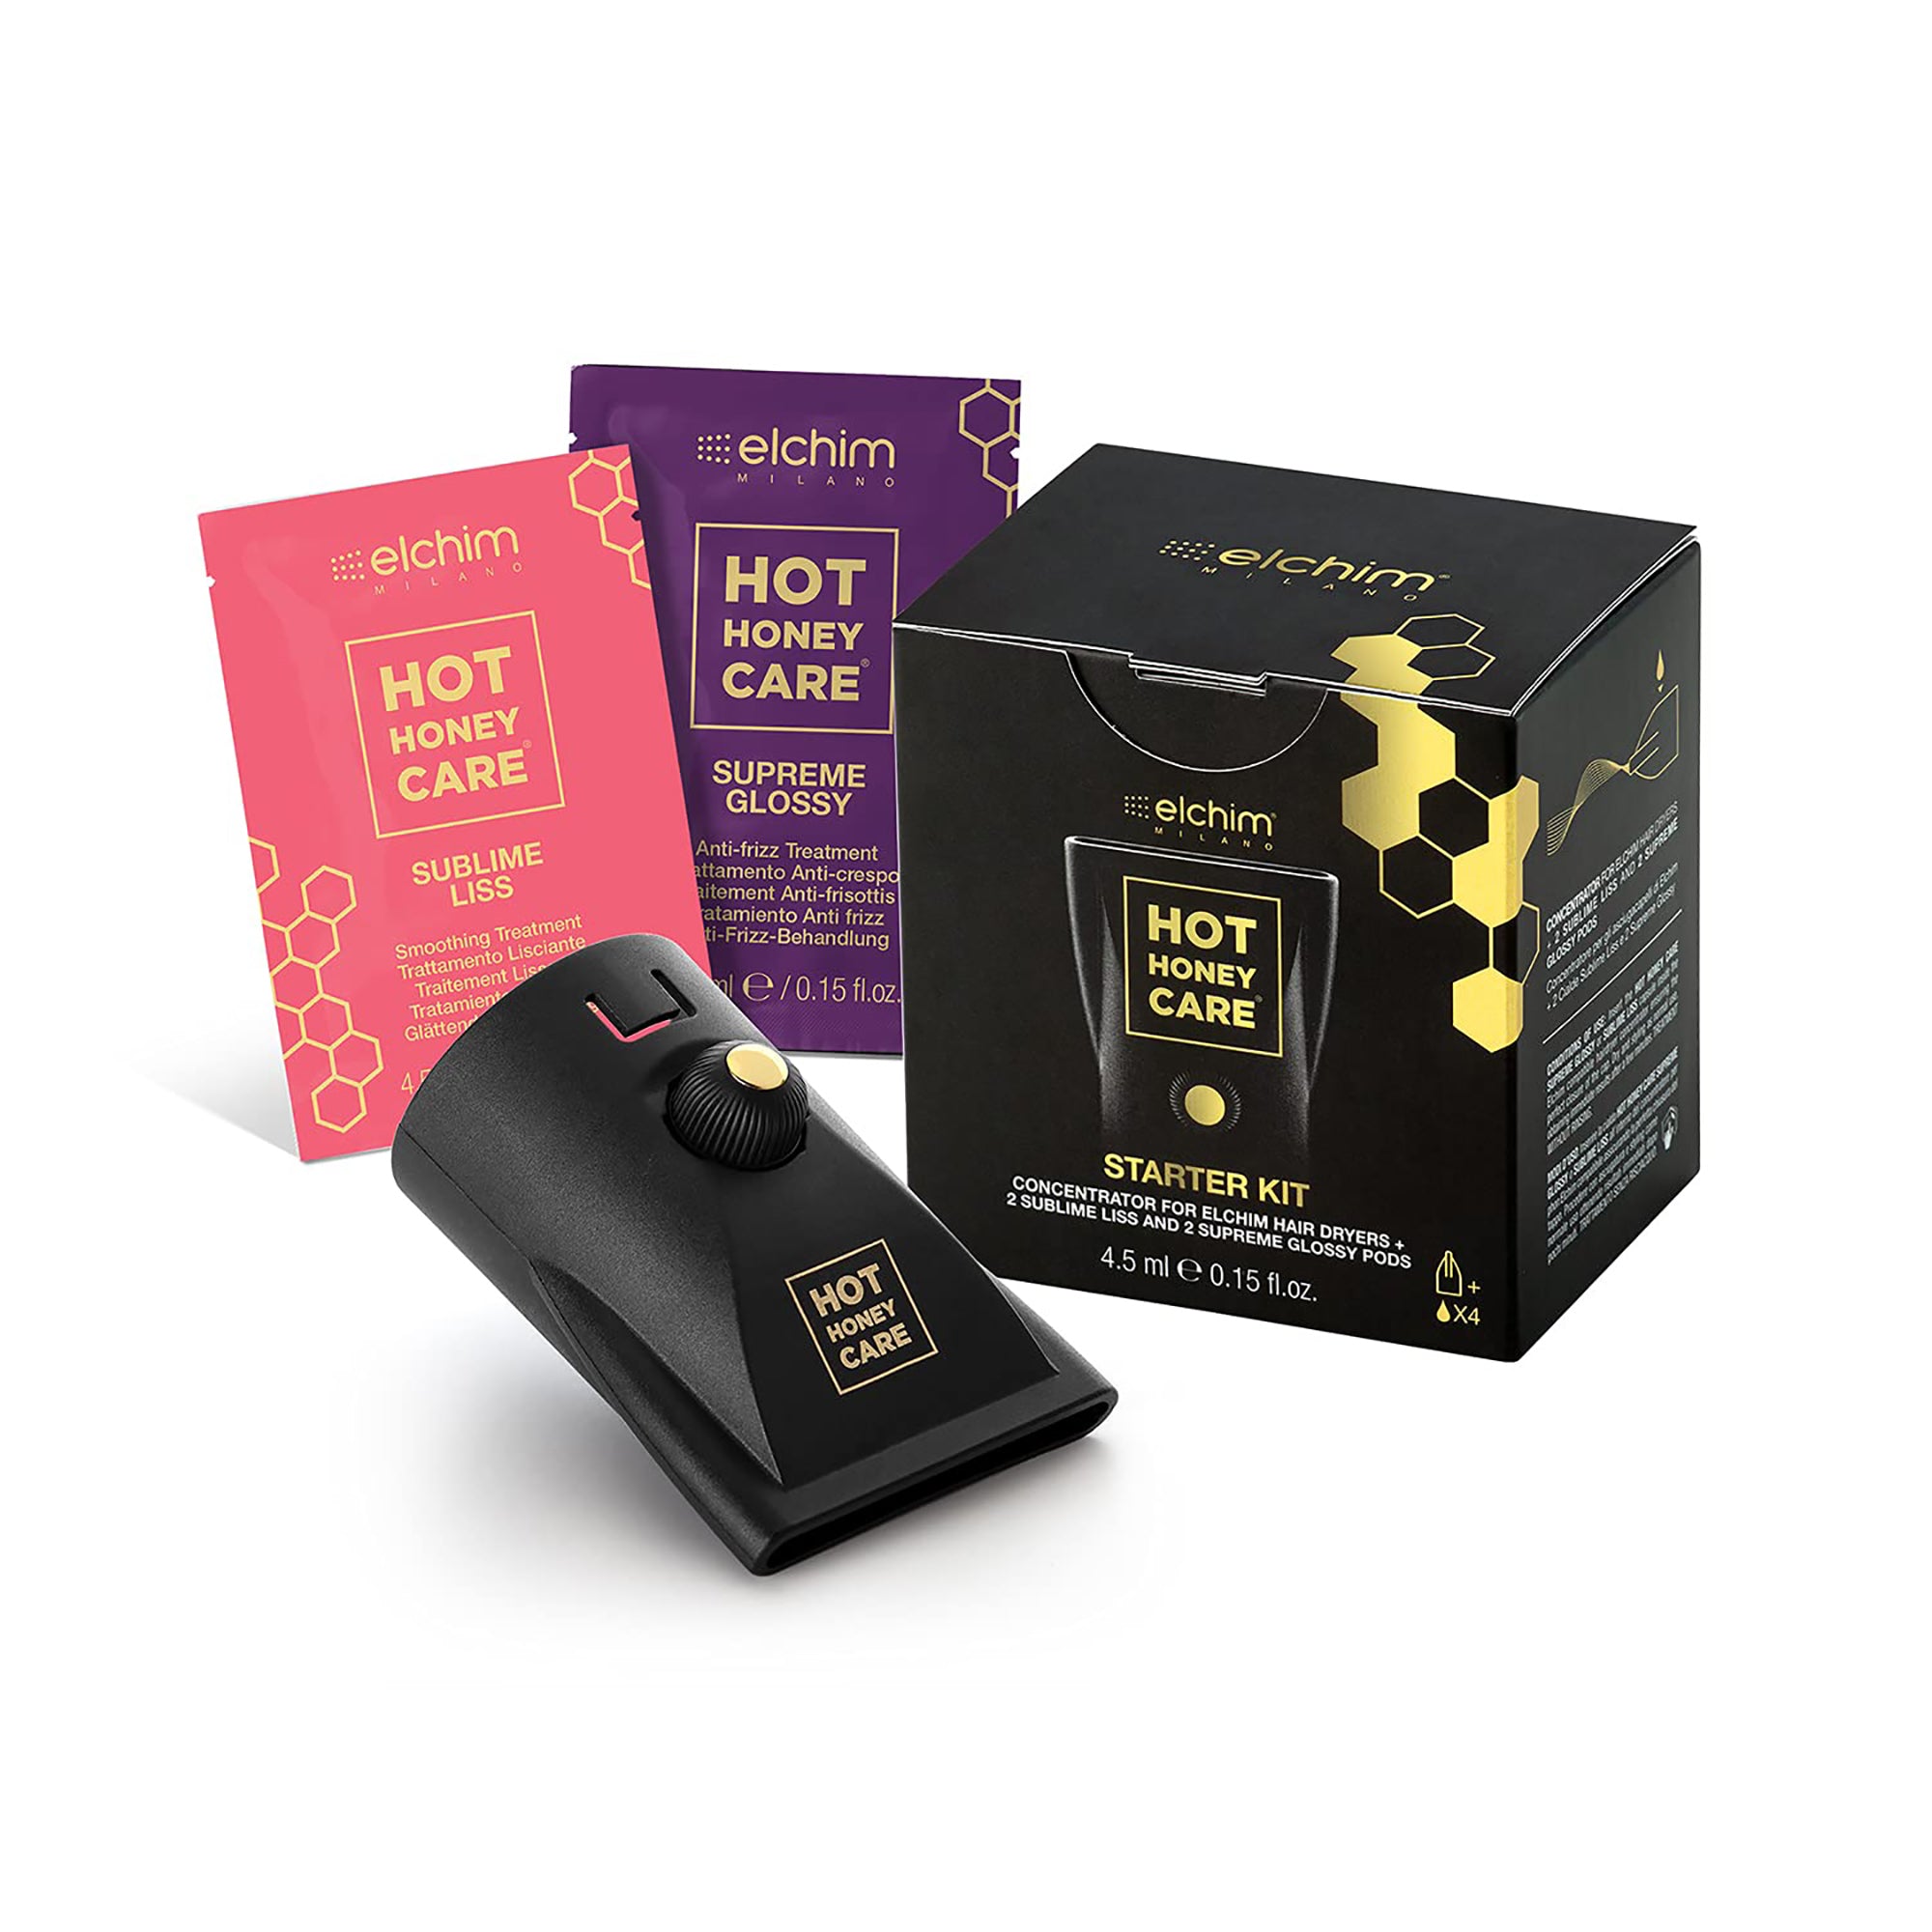 Elchim Hot Honey Care Starter Kit / STARTER KIT